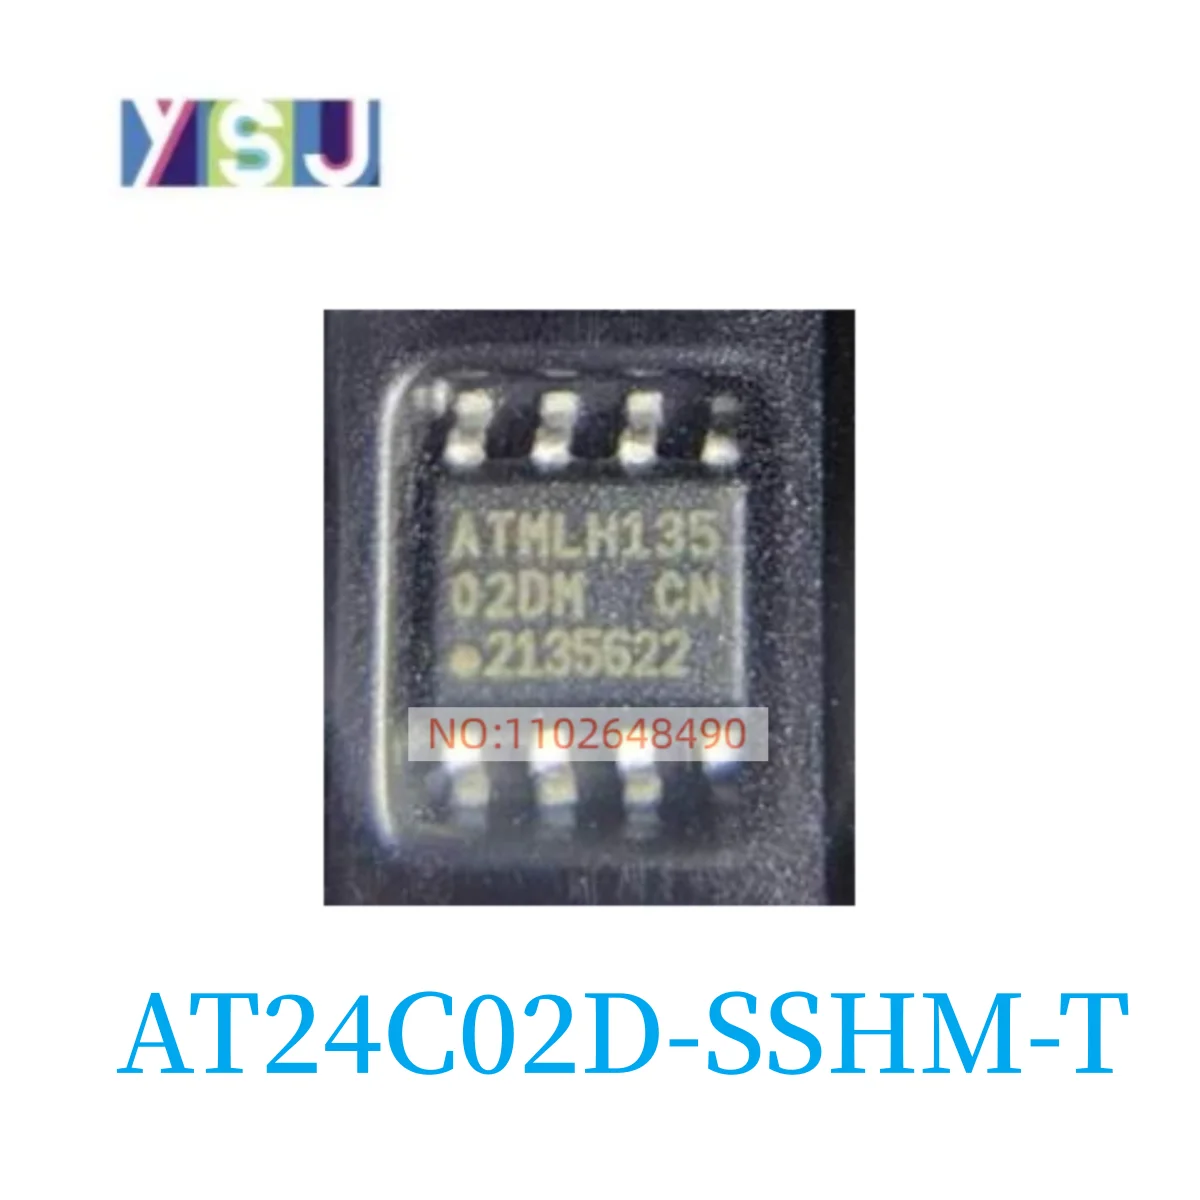 

AT24C02D-SSHM-T IC новые оригинальные Товары в наличии, если вам нужен другой IC, пожалуйста, проконсультируйтесь